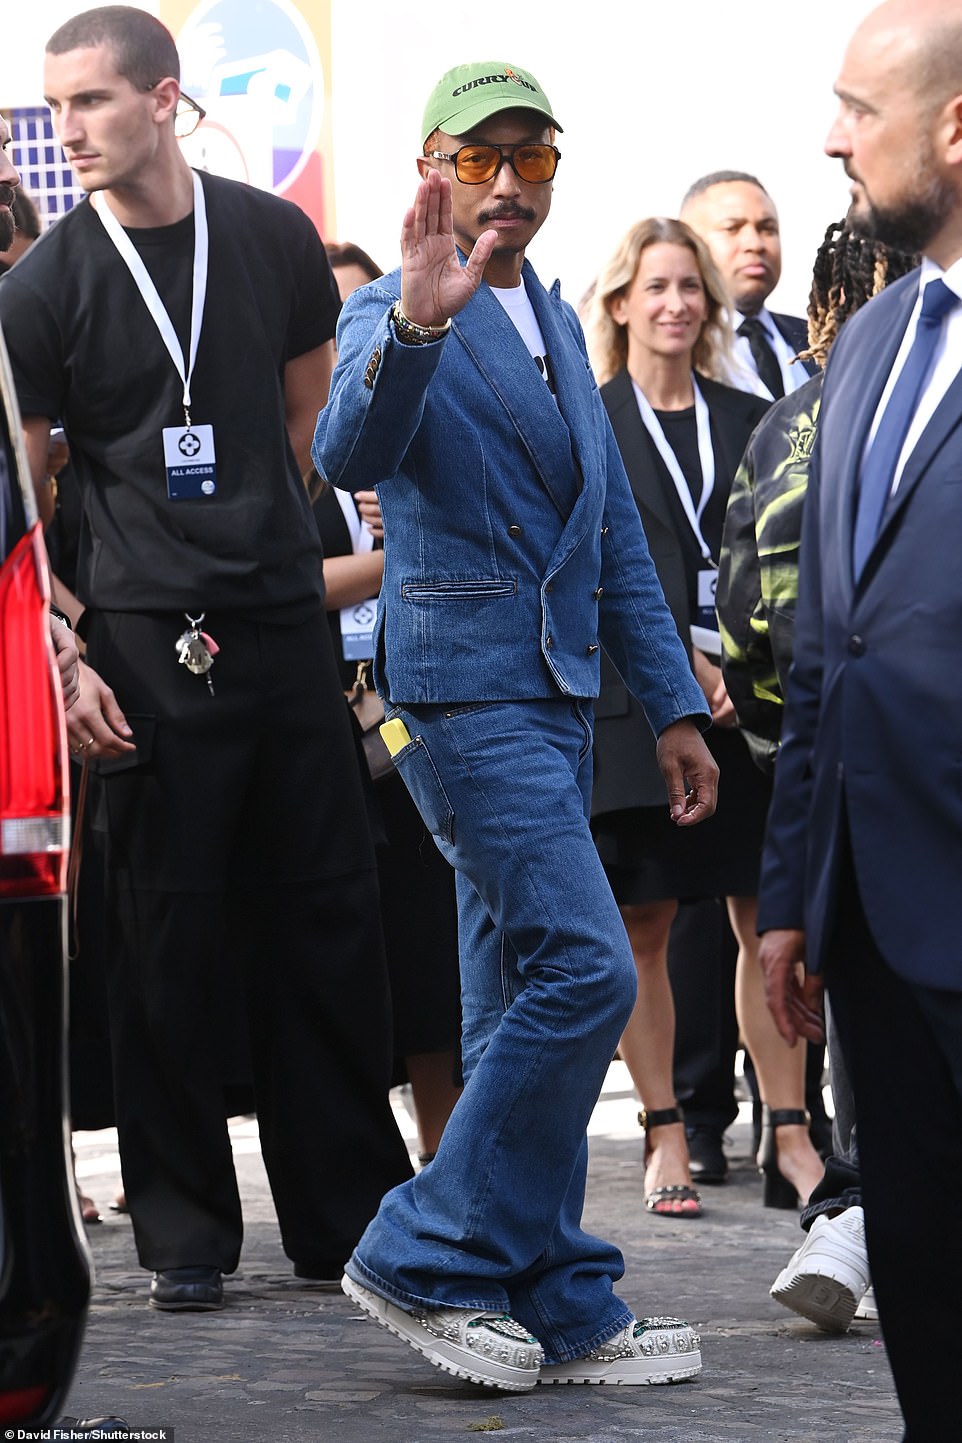 Stilvoll: Pharrell Williams trug eine Kombination aus Jeansjacke und Hose sowie umwerfende, klobige weiße Schuhe